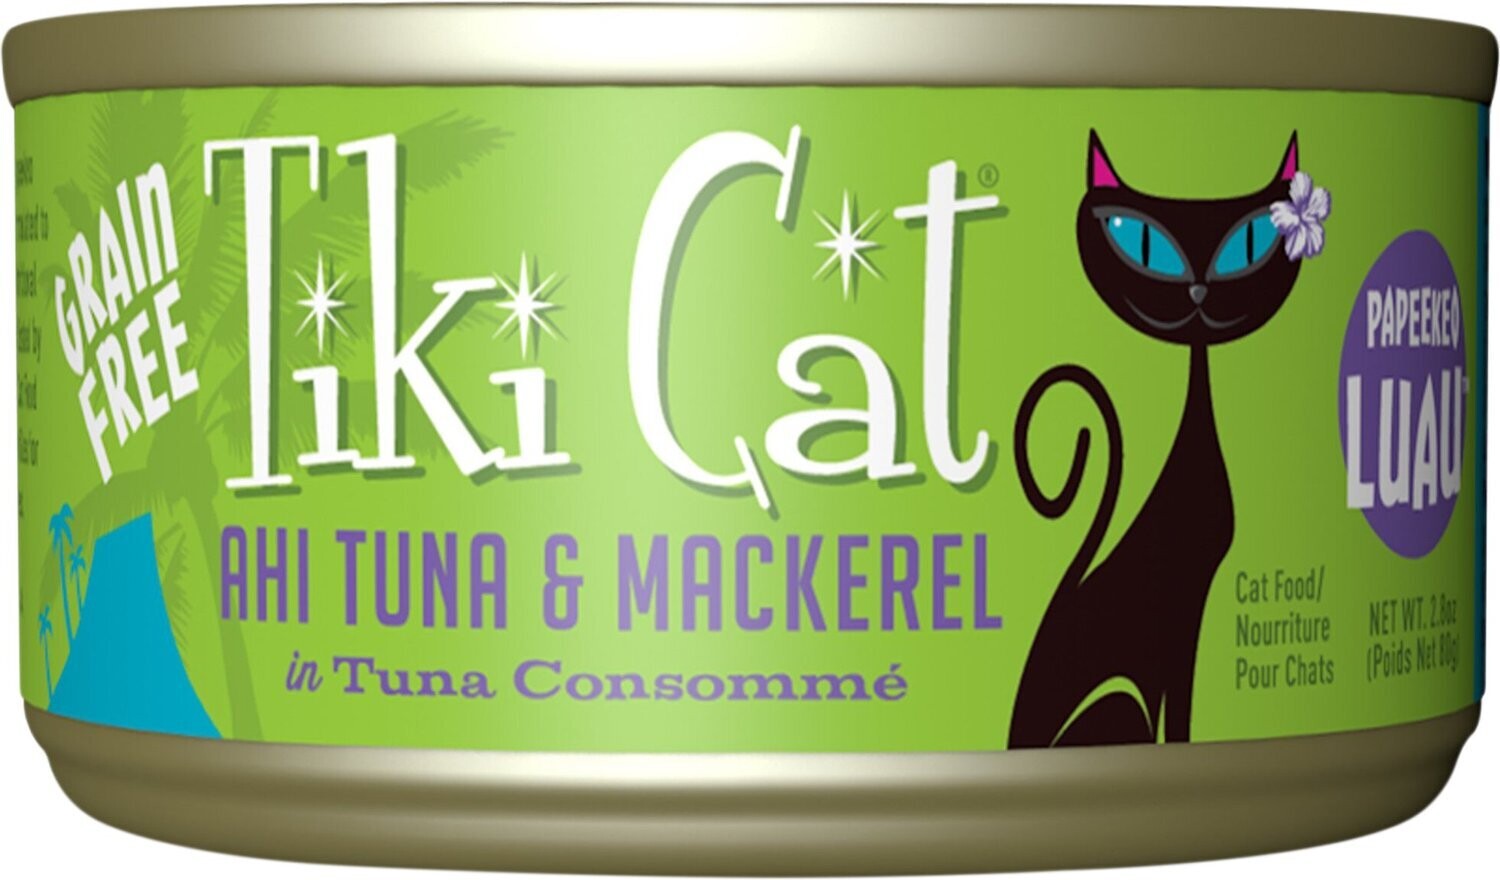 Tiki Cat Grill Ahi Tuna & Mackrel